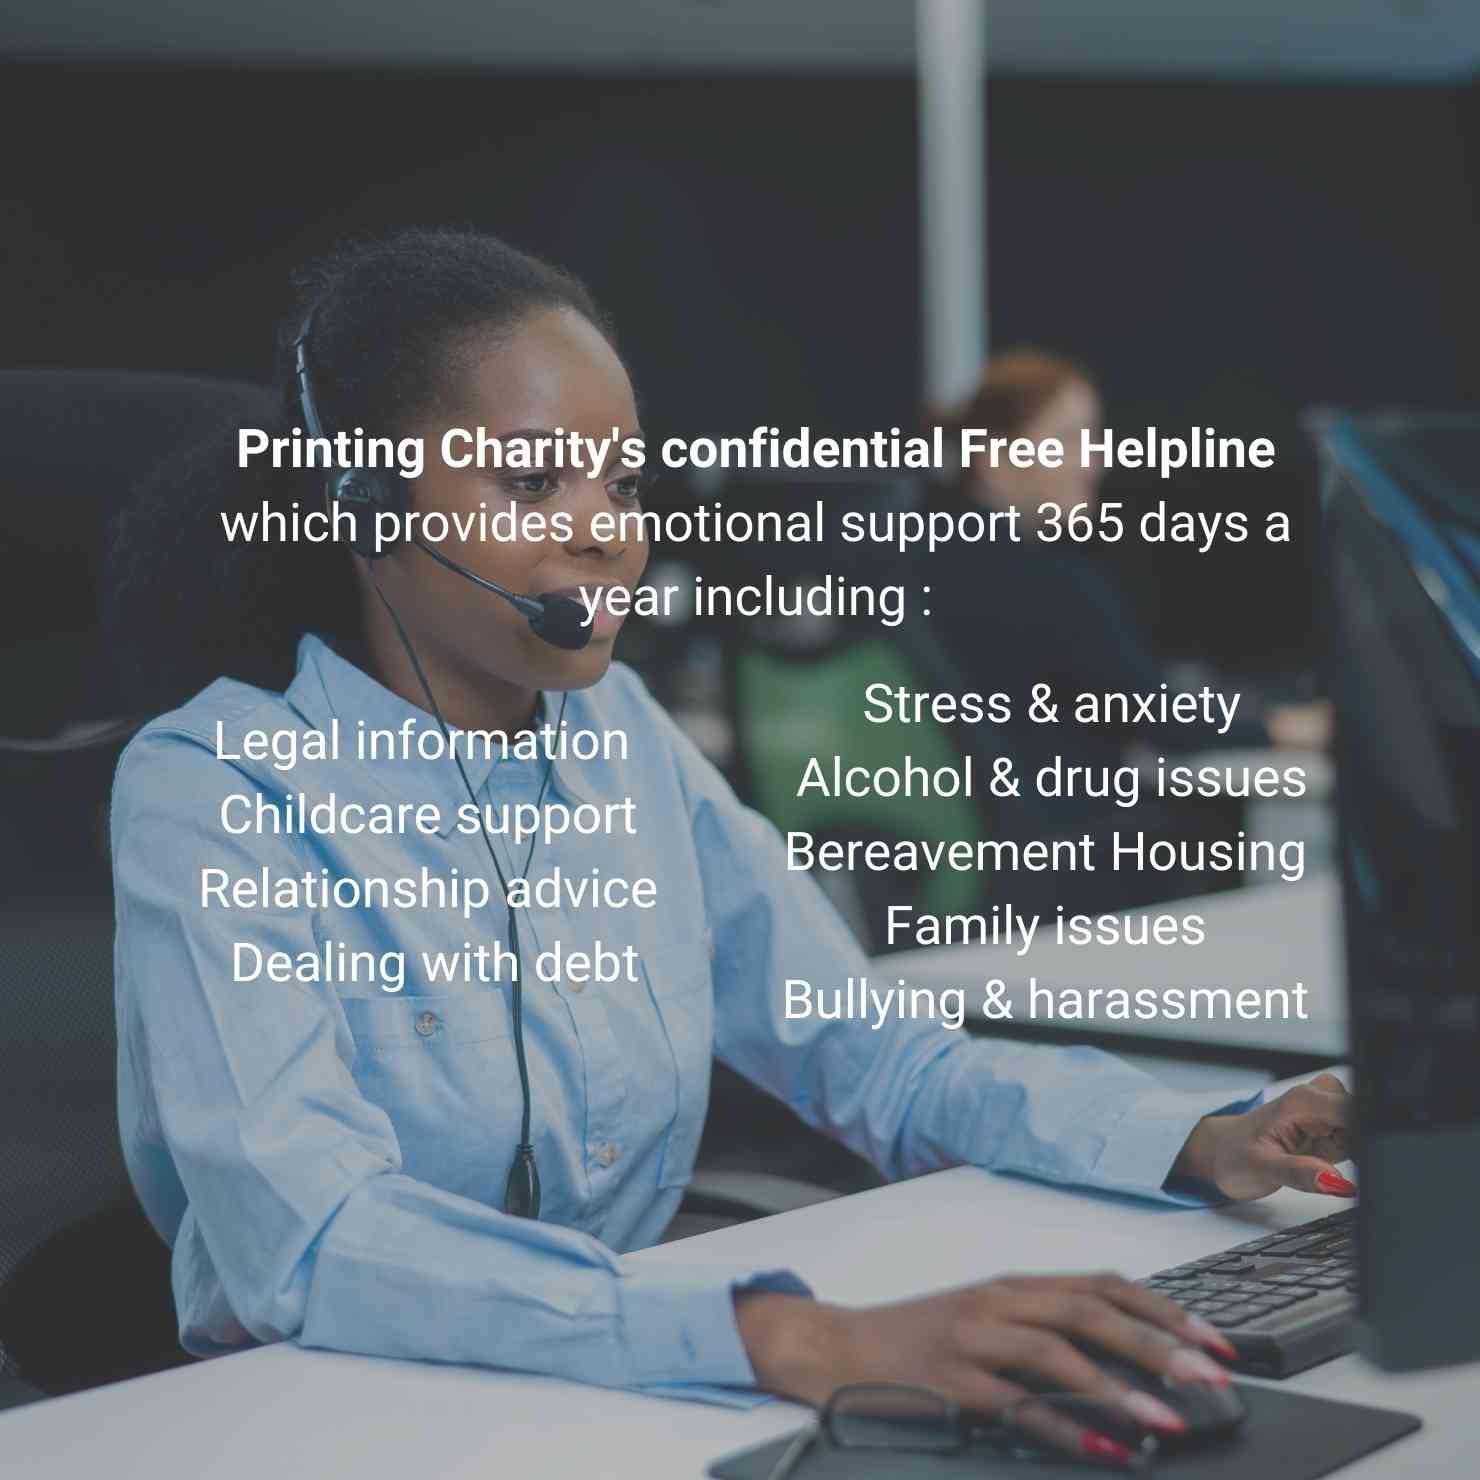 Printing Charity's Helpline